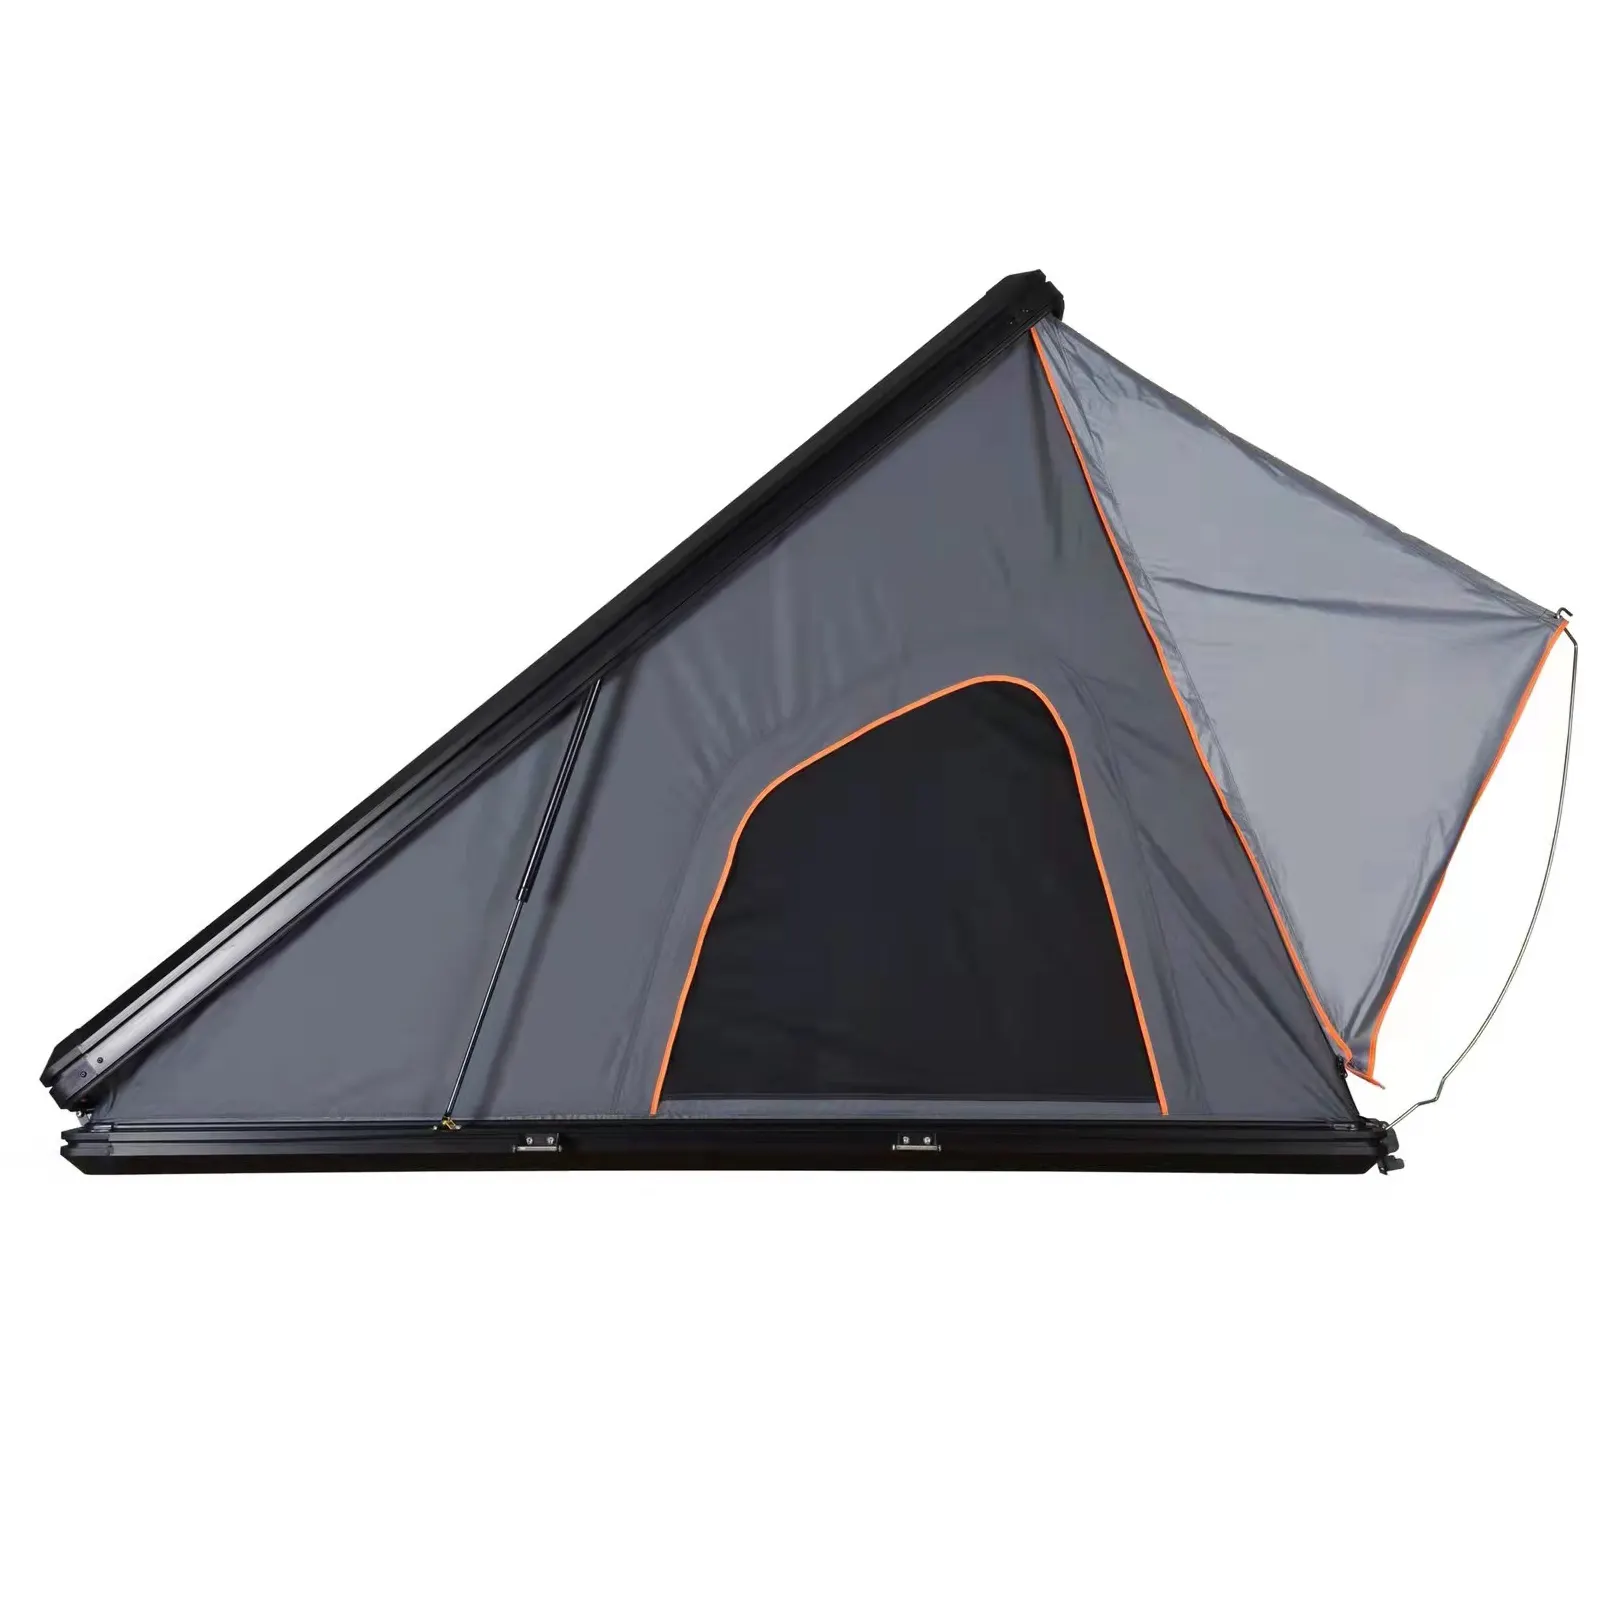 אלומיניום מסגרת קשיח תקרת גג אוהל עבור SUV, קליפה קשה גג עבור Se95898, חיצוני קמפינג 2.1m אלומיניום גג